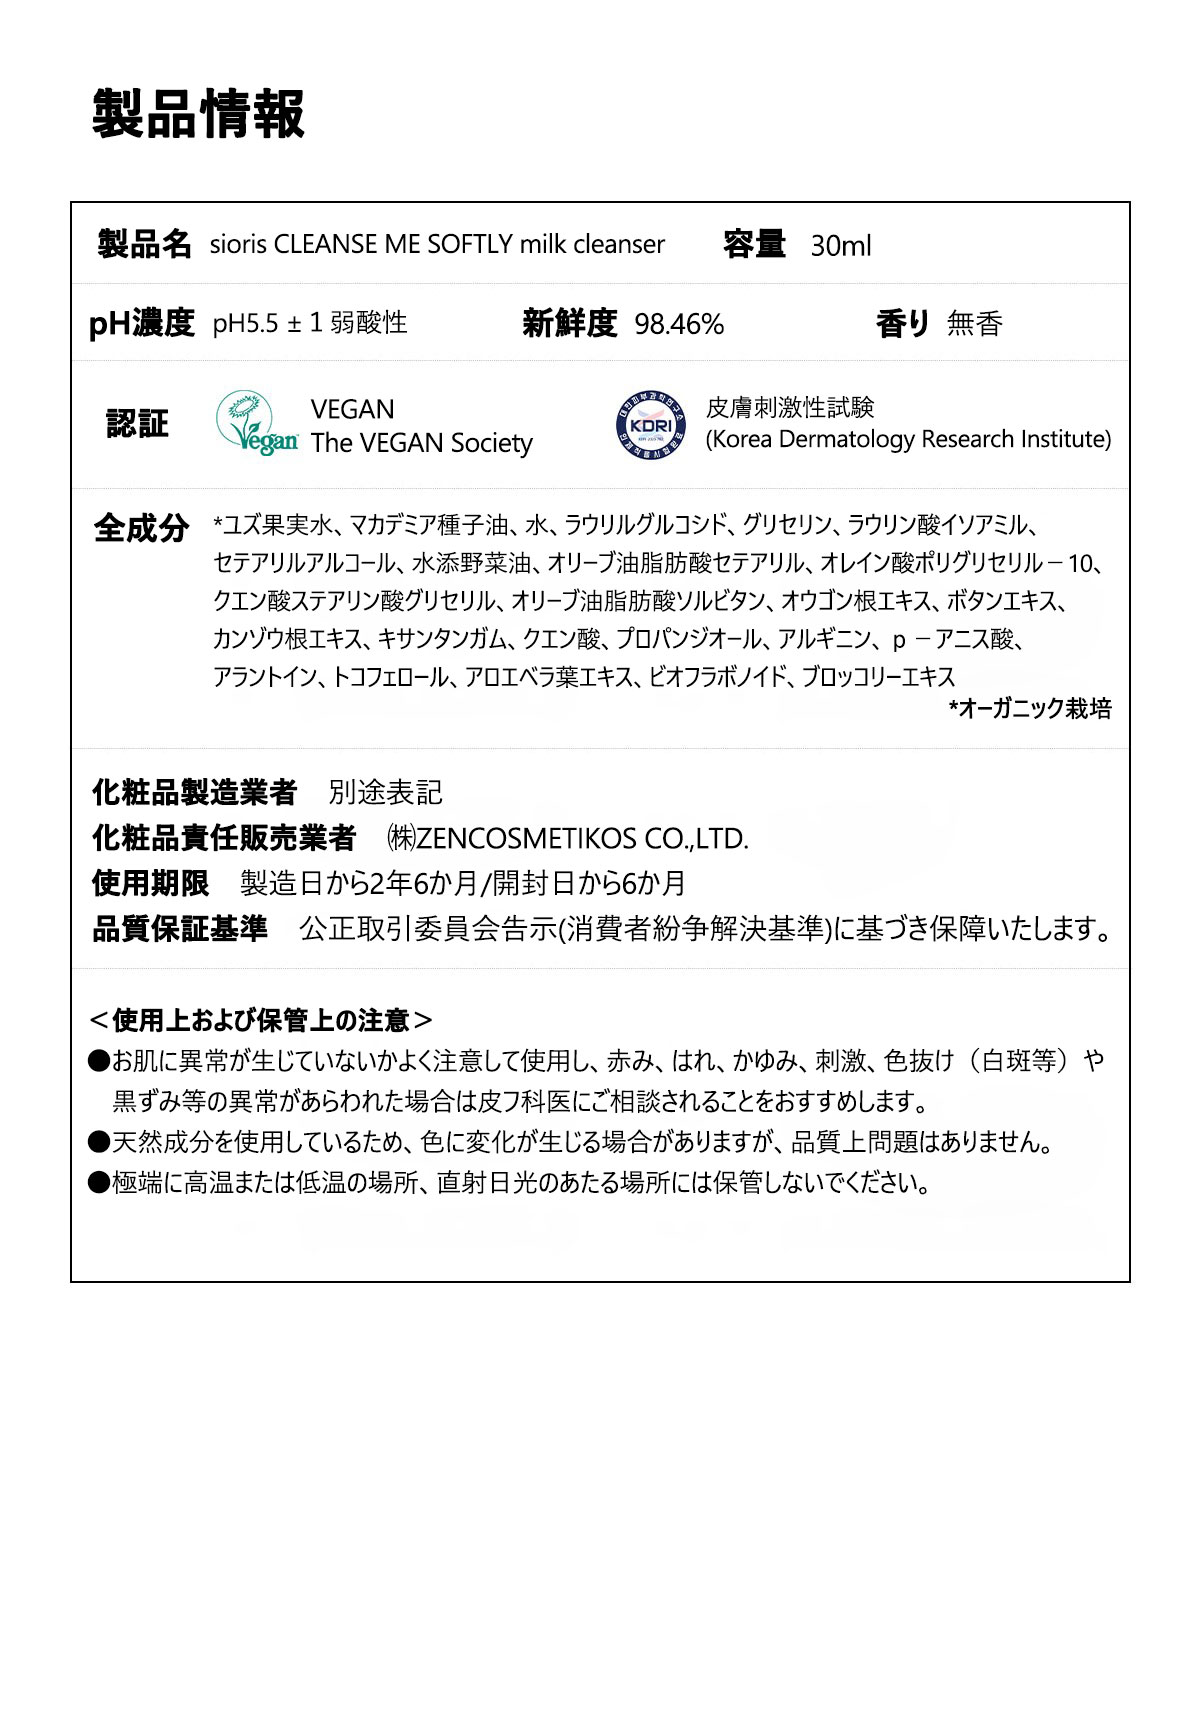 ミニサイズセット SIORIS 日本公式サイト